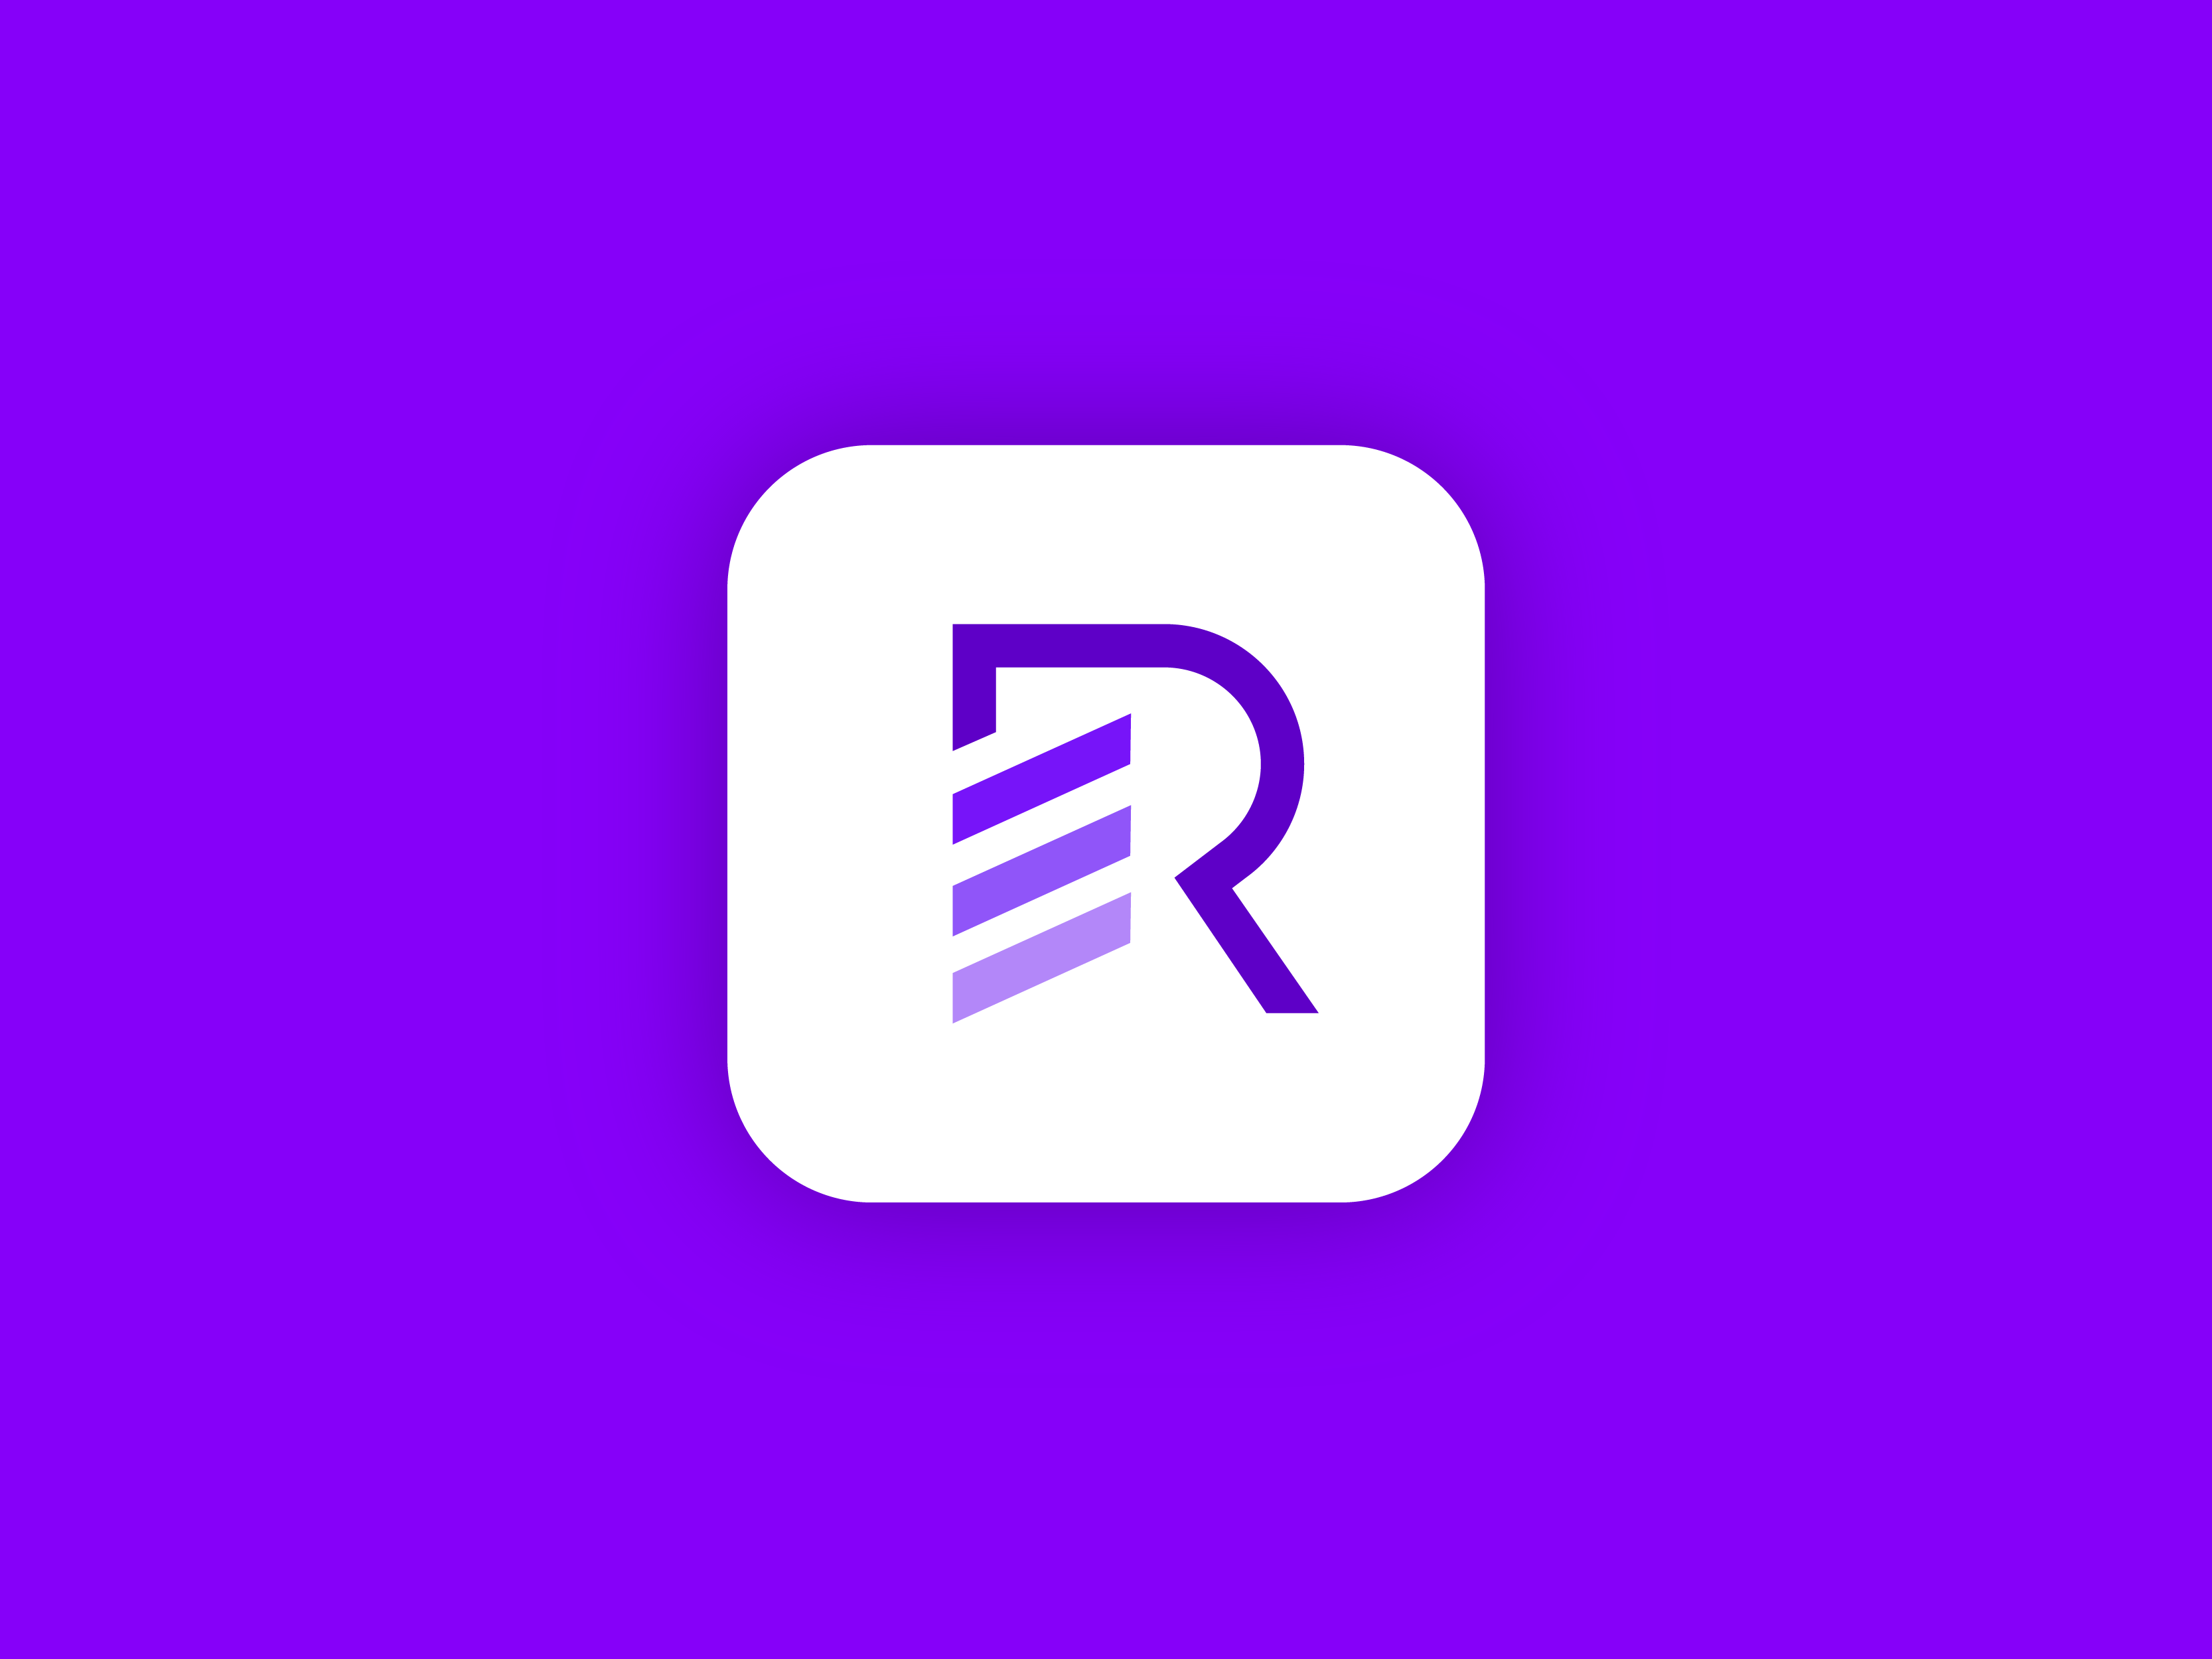 D en r. R лого. R logo Design. Zeekr логотип. R Letter logo.